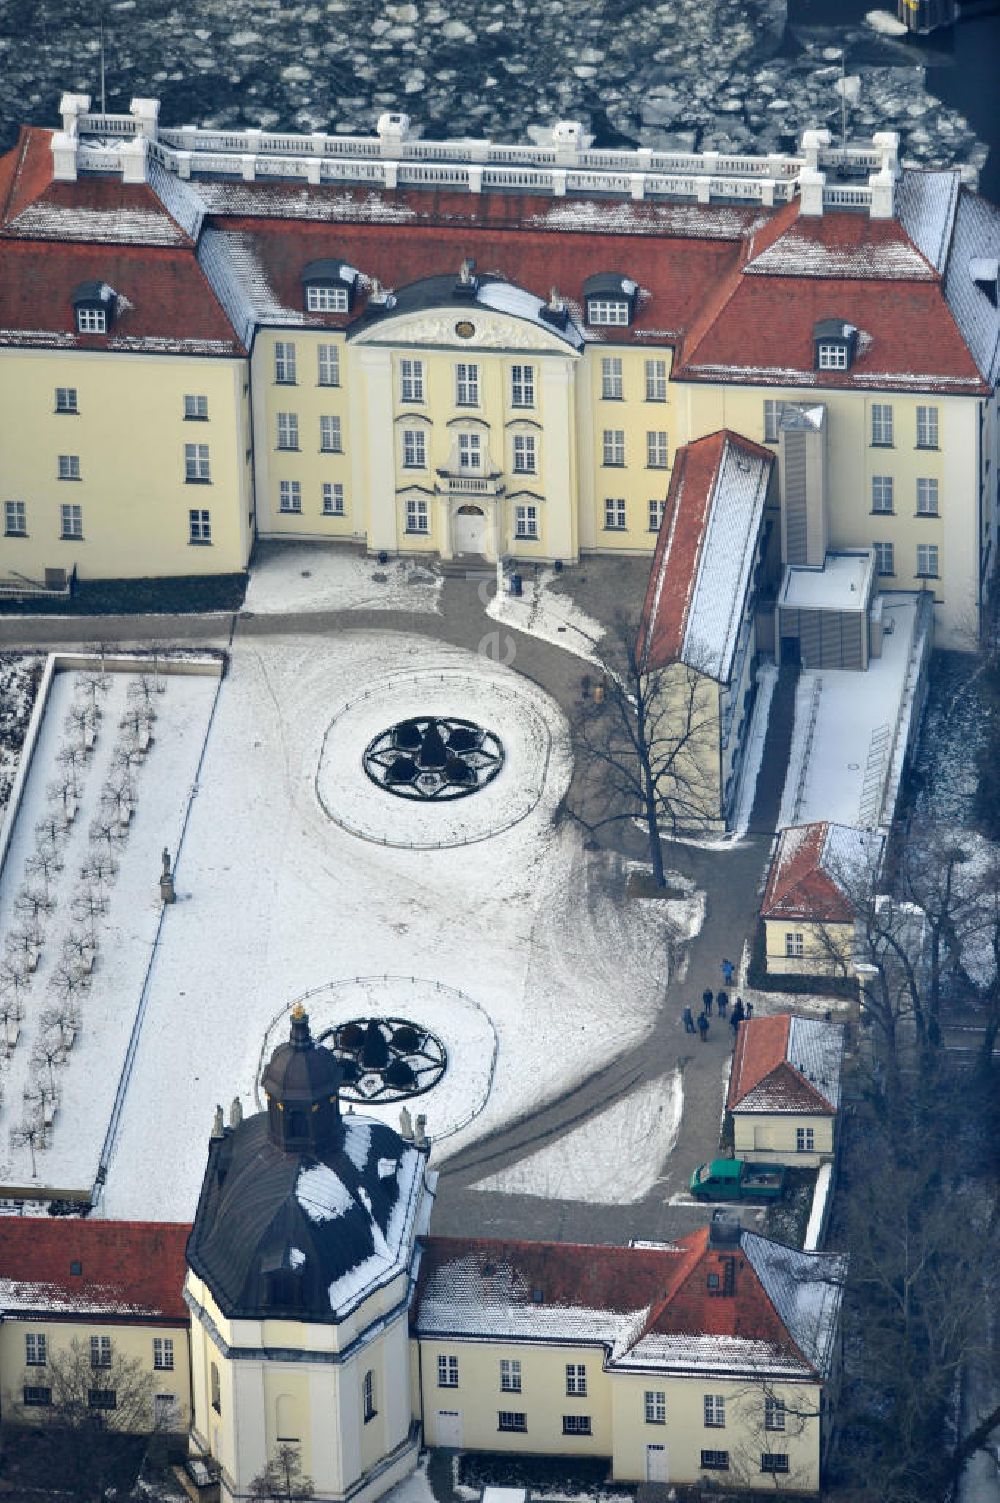 Berlin aus der Vogelperspektive: Blick auf den winterlich verschneite Schloß Köpenick